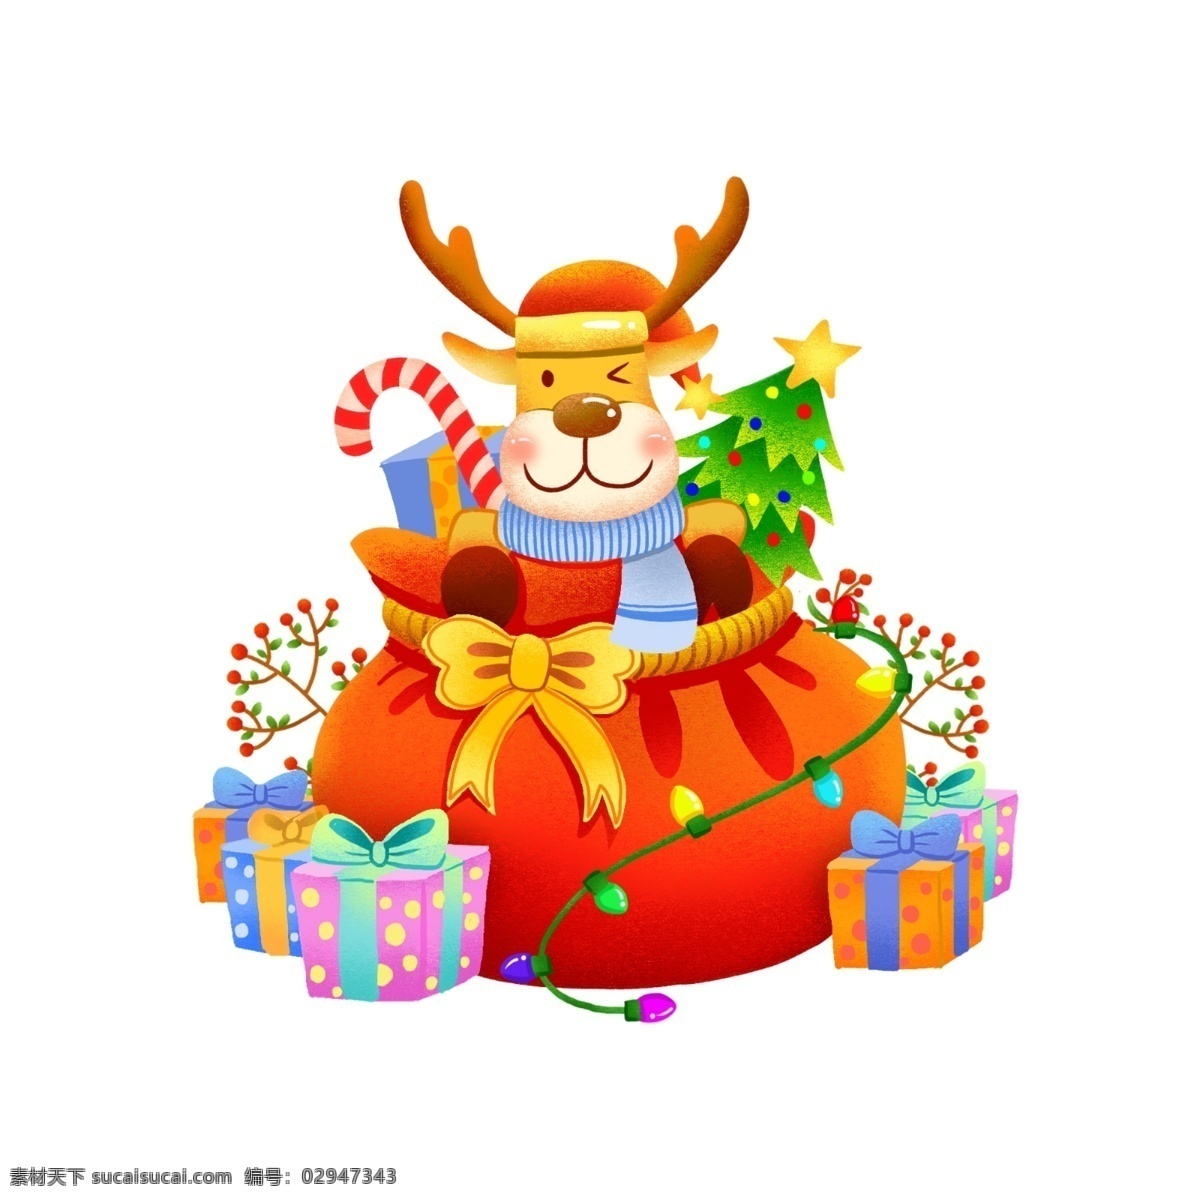 手绘 圣诞节 可爱 麋鹿 精品 元素 礼盒 喜庆 红色 金色 新年 节日 福袋 礼包 礼物袋 礼物 彩灯 圣诞树 糖果 植物 装饰灯 圣诞帽 围巾 喜气洋洋 星星 可商用 蝴蝶结